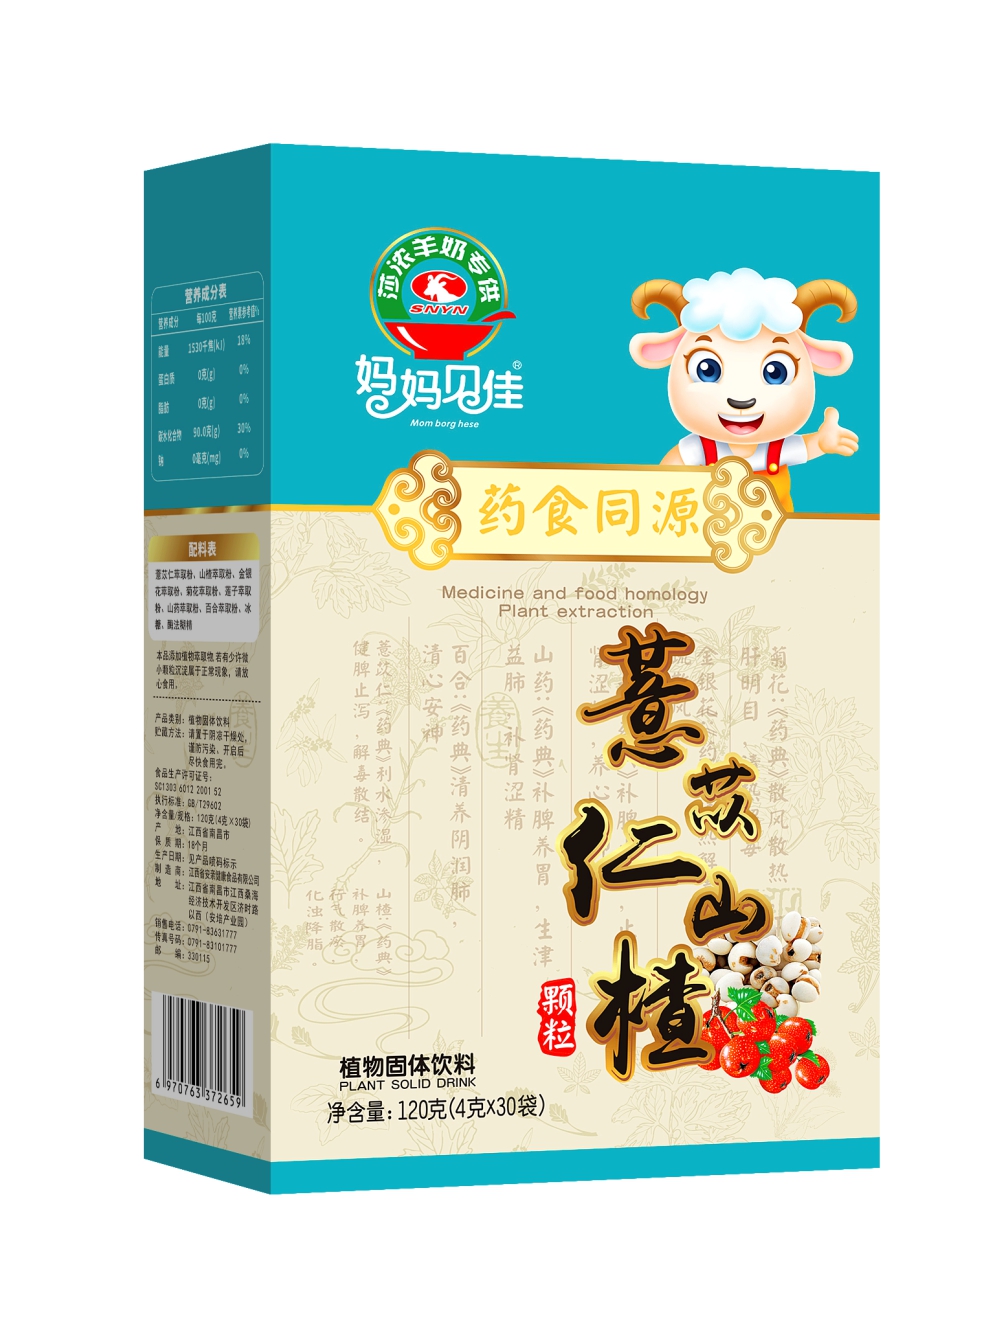 莎浓羊奶药食同源薏苡仁山楂代理,样品编号:78840